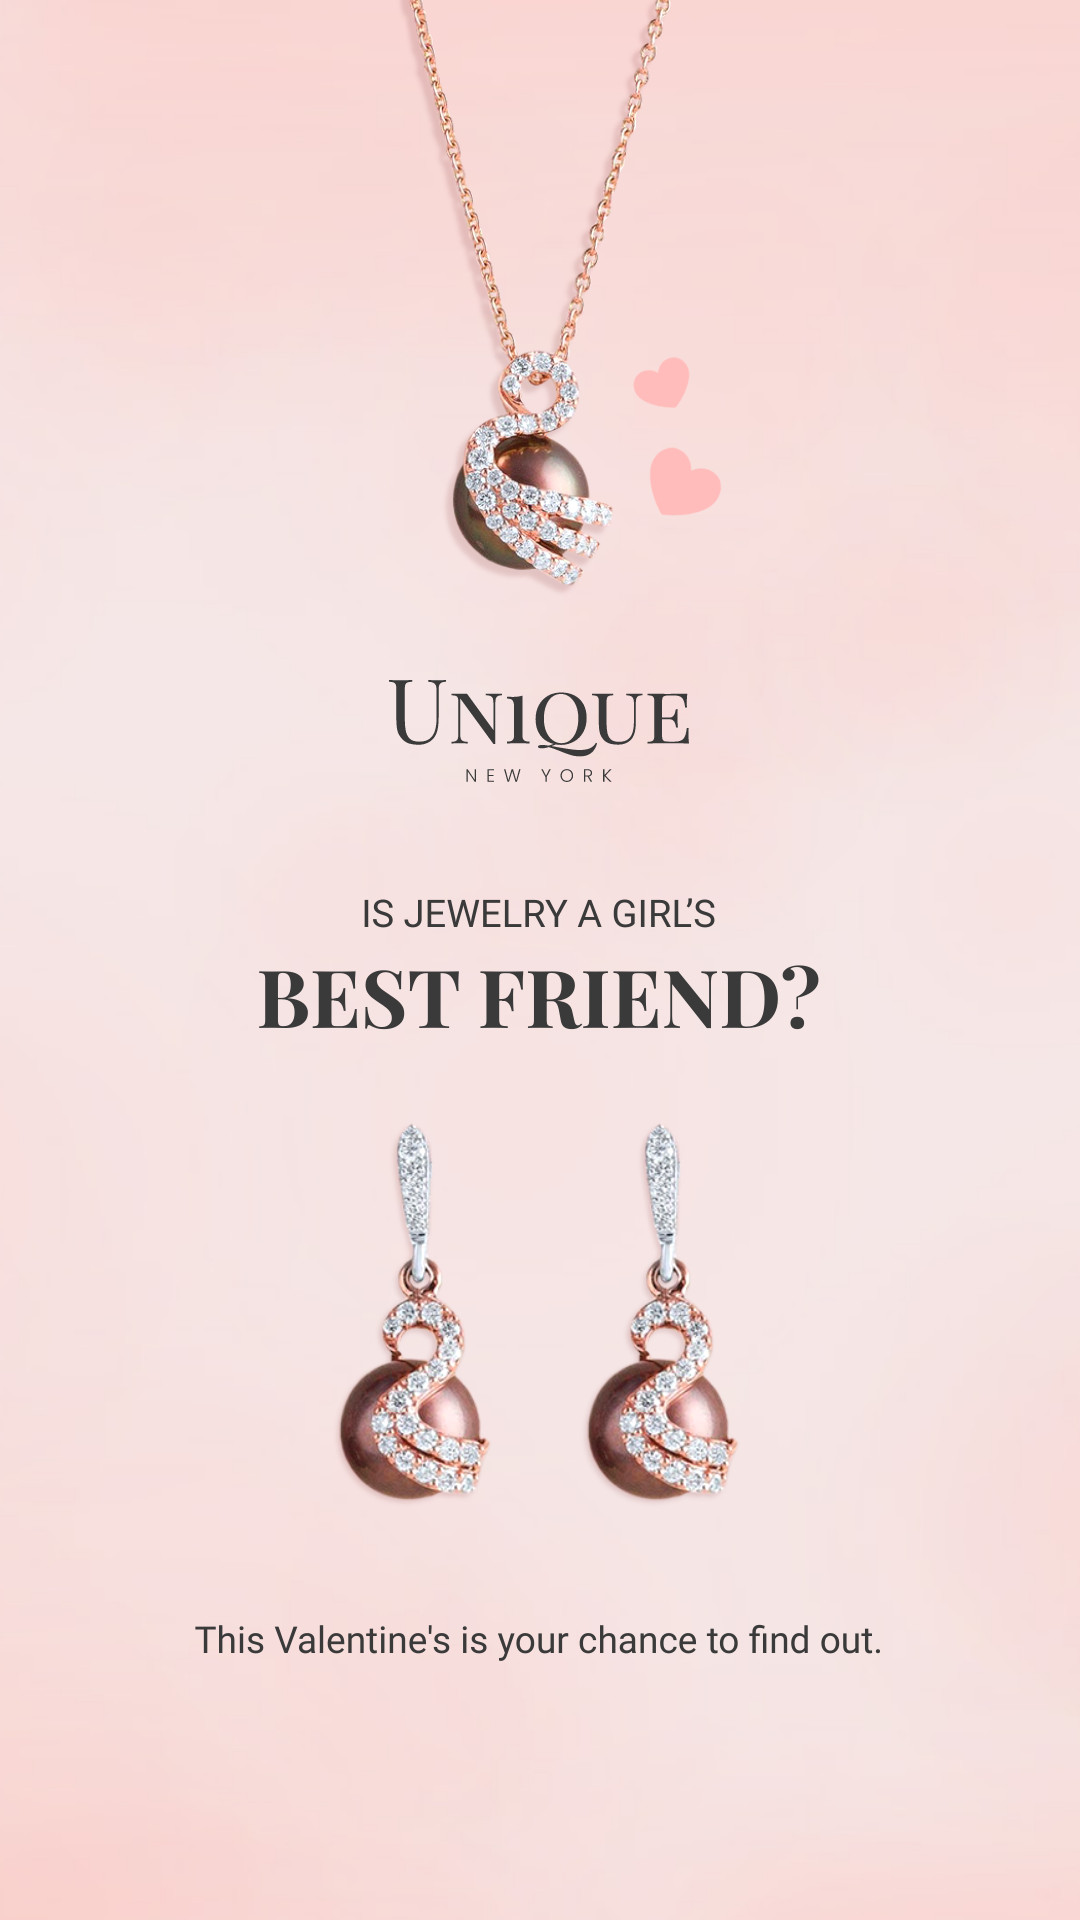 Jewelry Best Friend on Valentine's Day Inline Rectangle 300x250